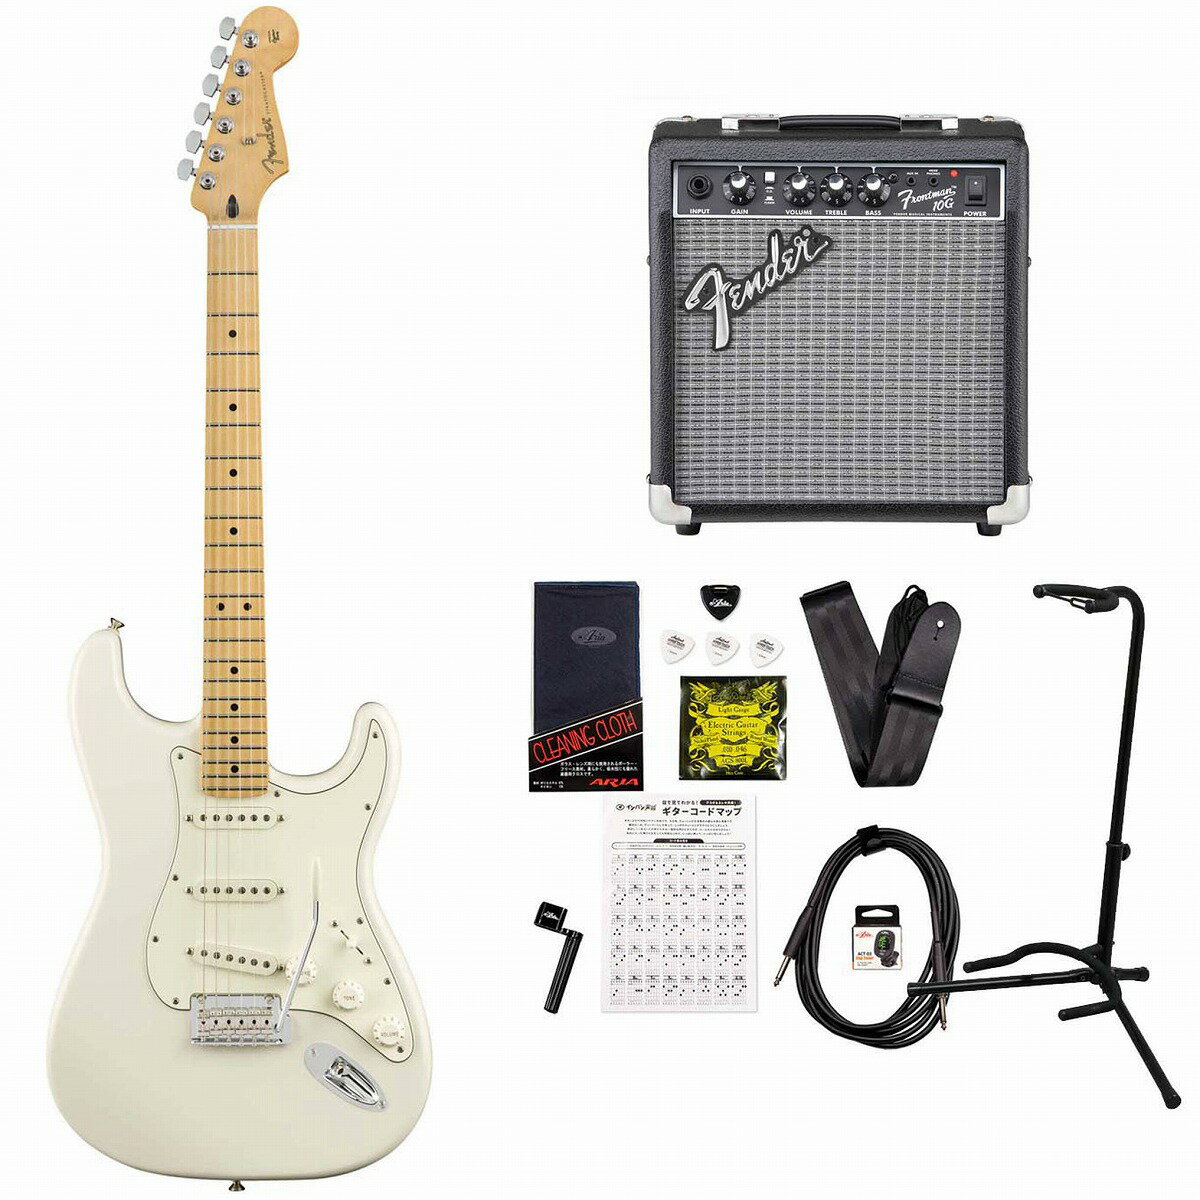 《限界突破特価!》Fender / Player Series Stratocaster Polar White Maple Frontman10Gアンプ付属エレキギター初心者セット《+4582600680067》